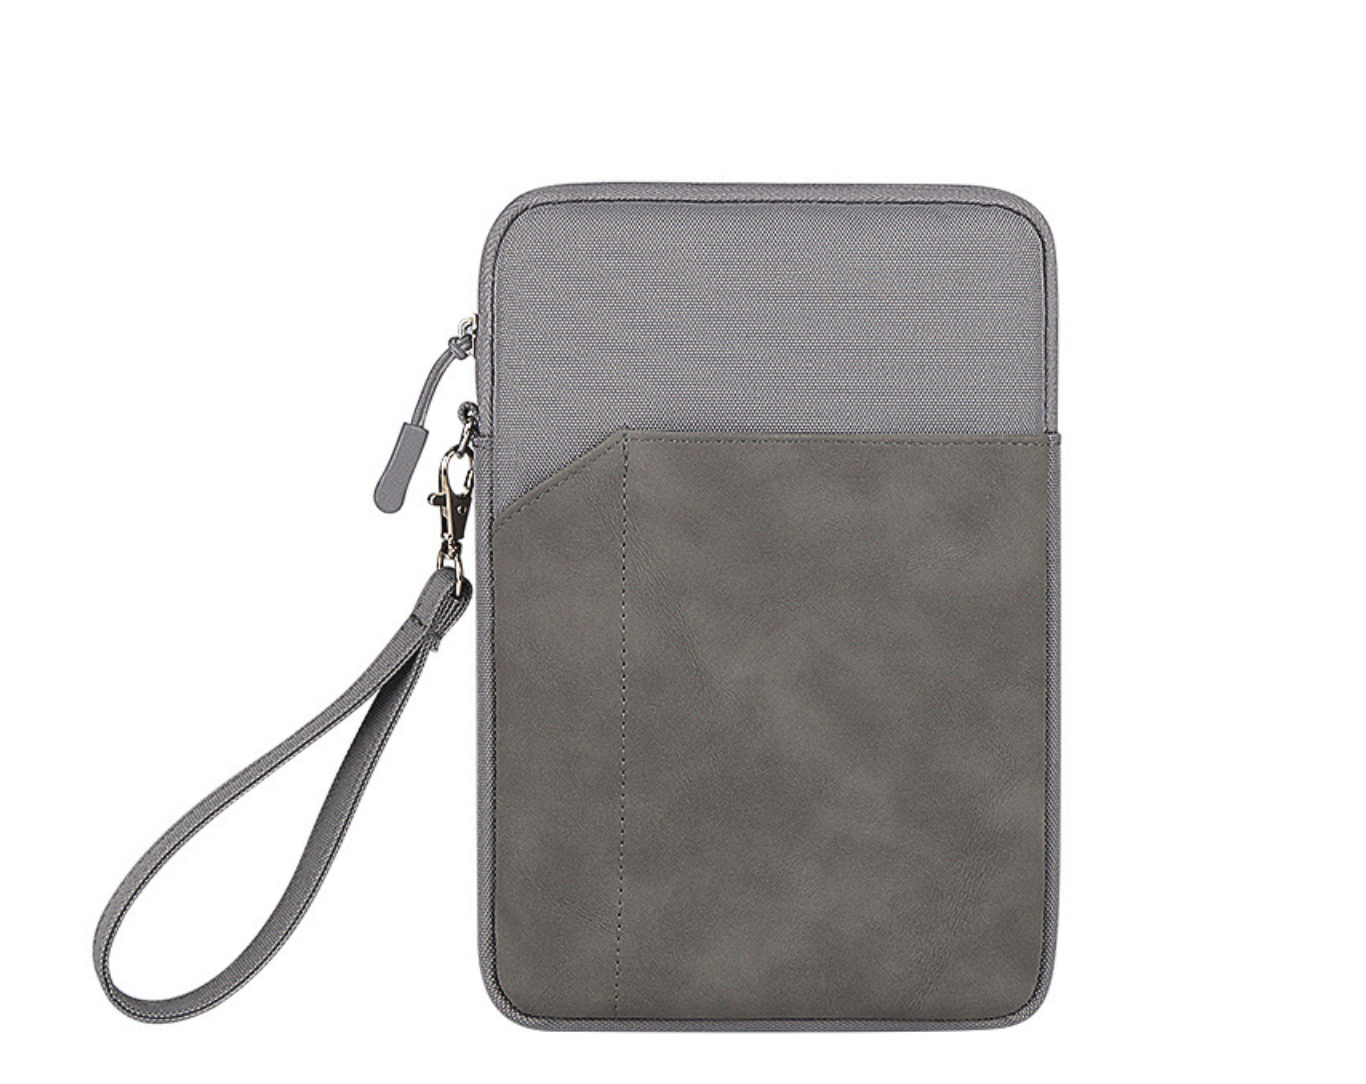 Túi chống sốc dành cho ipad cho macbook laptop surface da lộn chống nước lót lông siêu dày - Hàng chính hãng